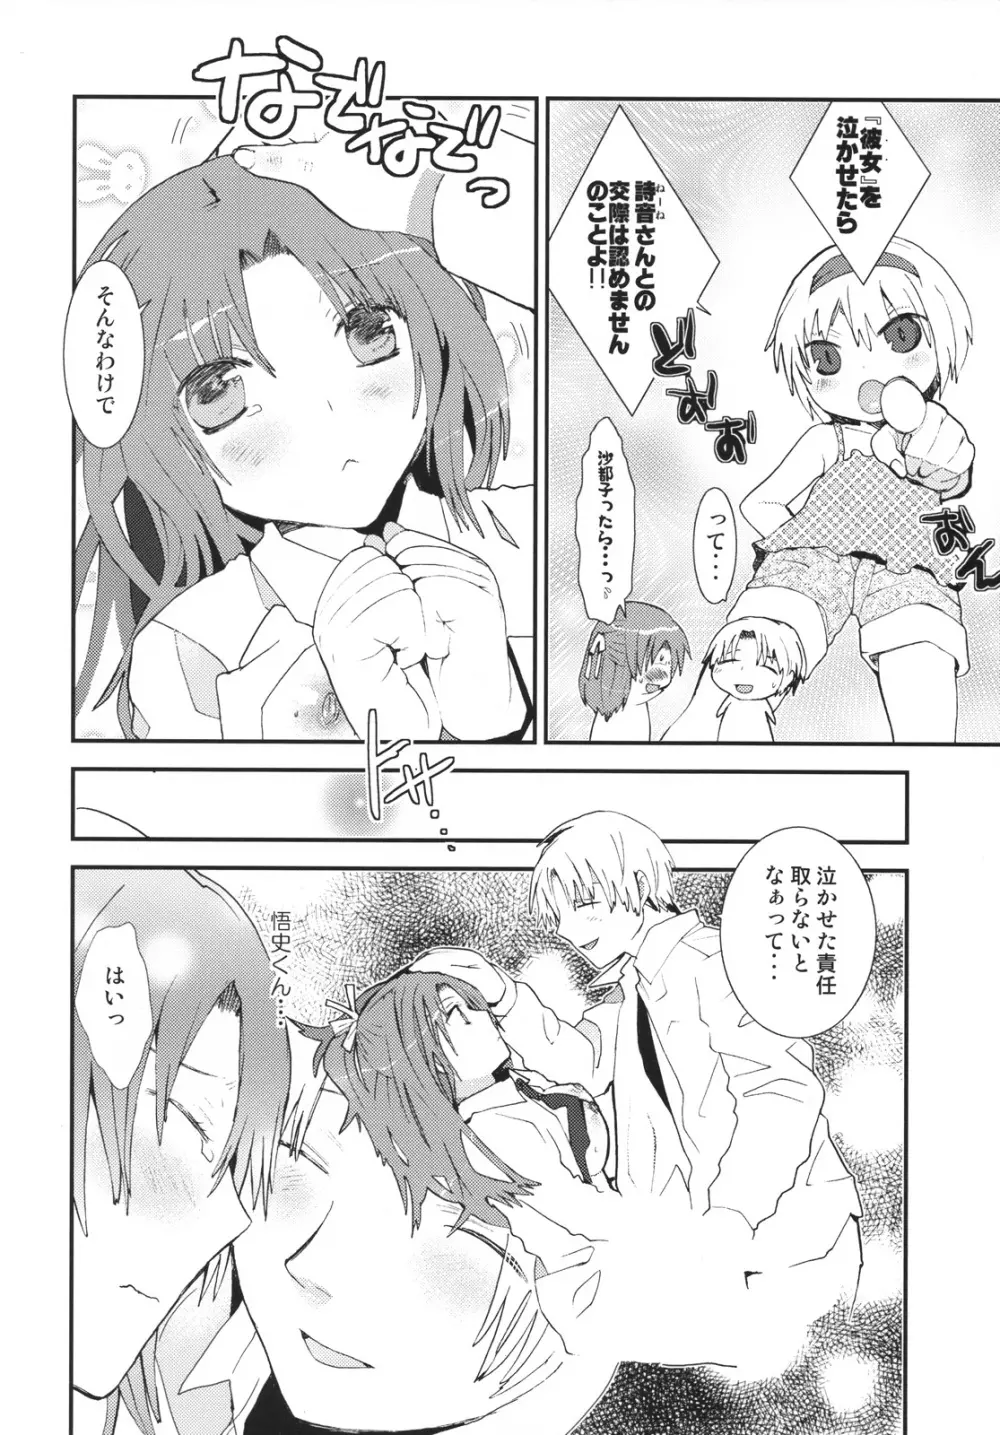 Umineko sono higurashi - page21